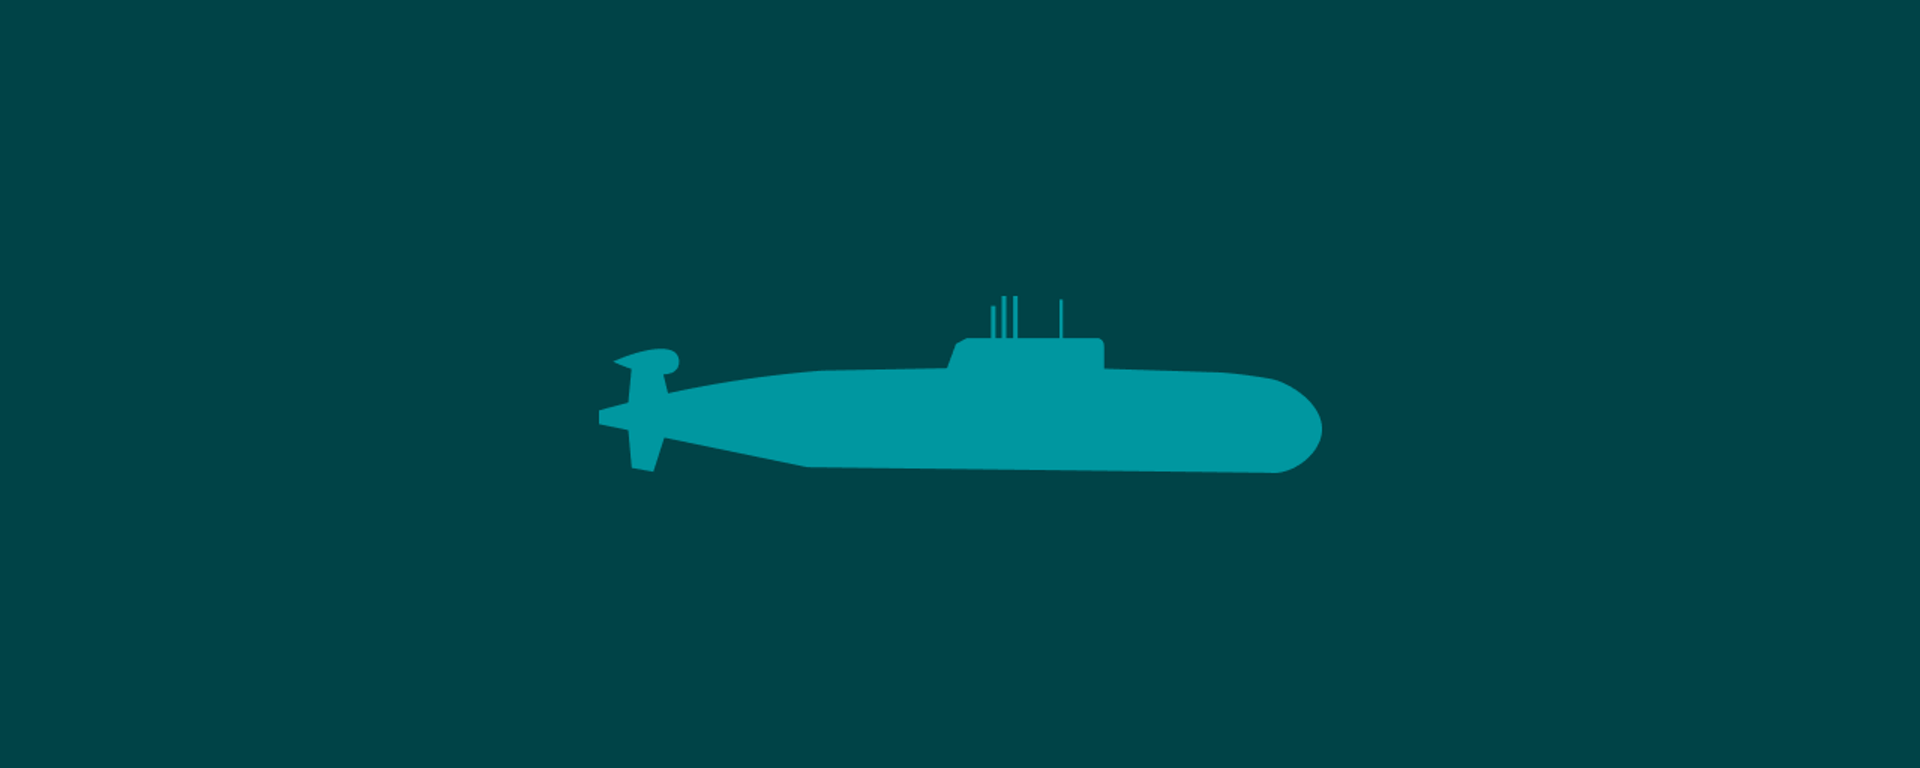 潜水艦の国別保有数トップ10 - Sputnik 日本, 1920, 15.03.2023